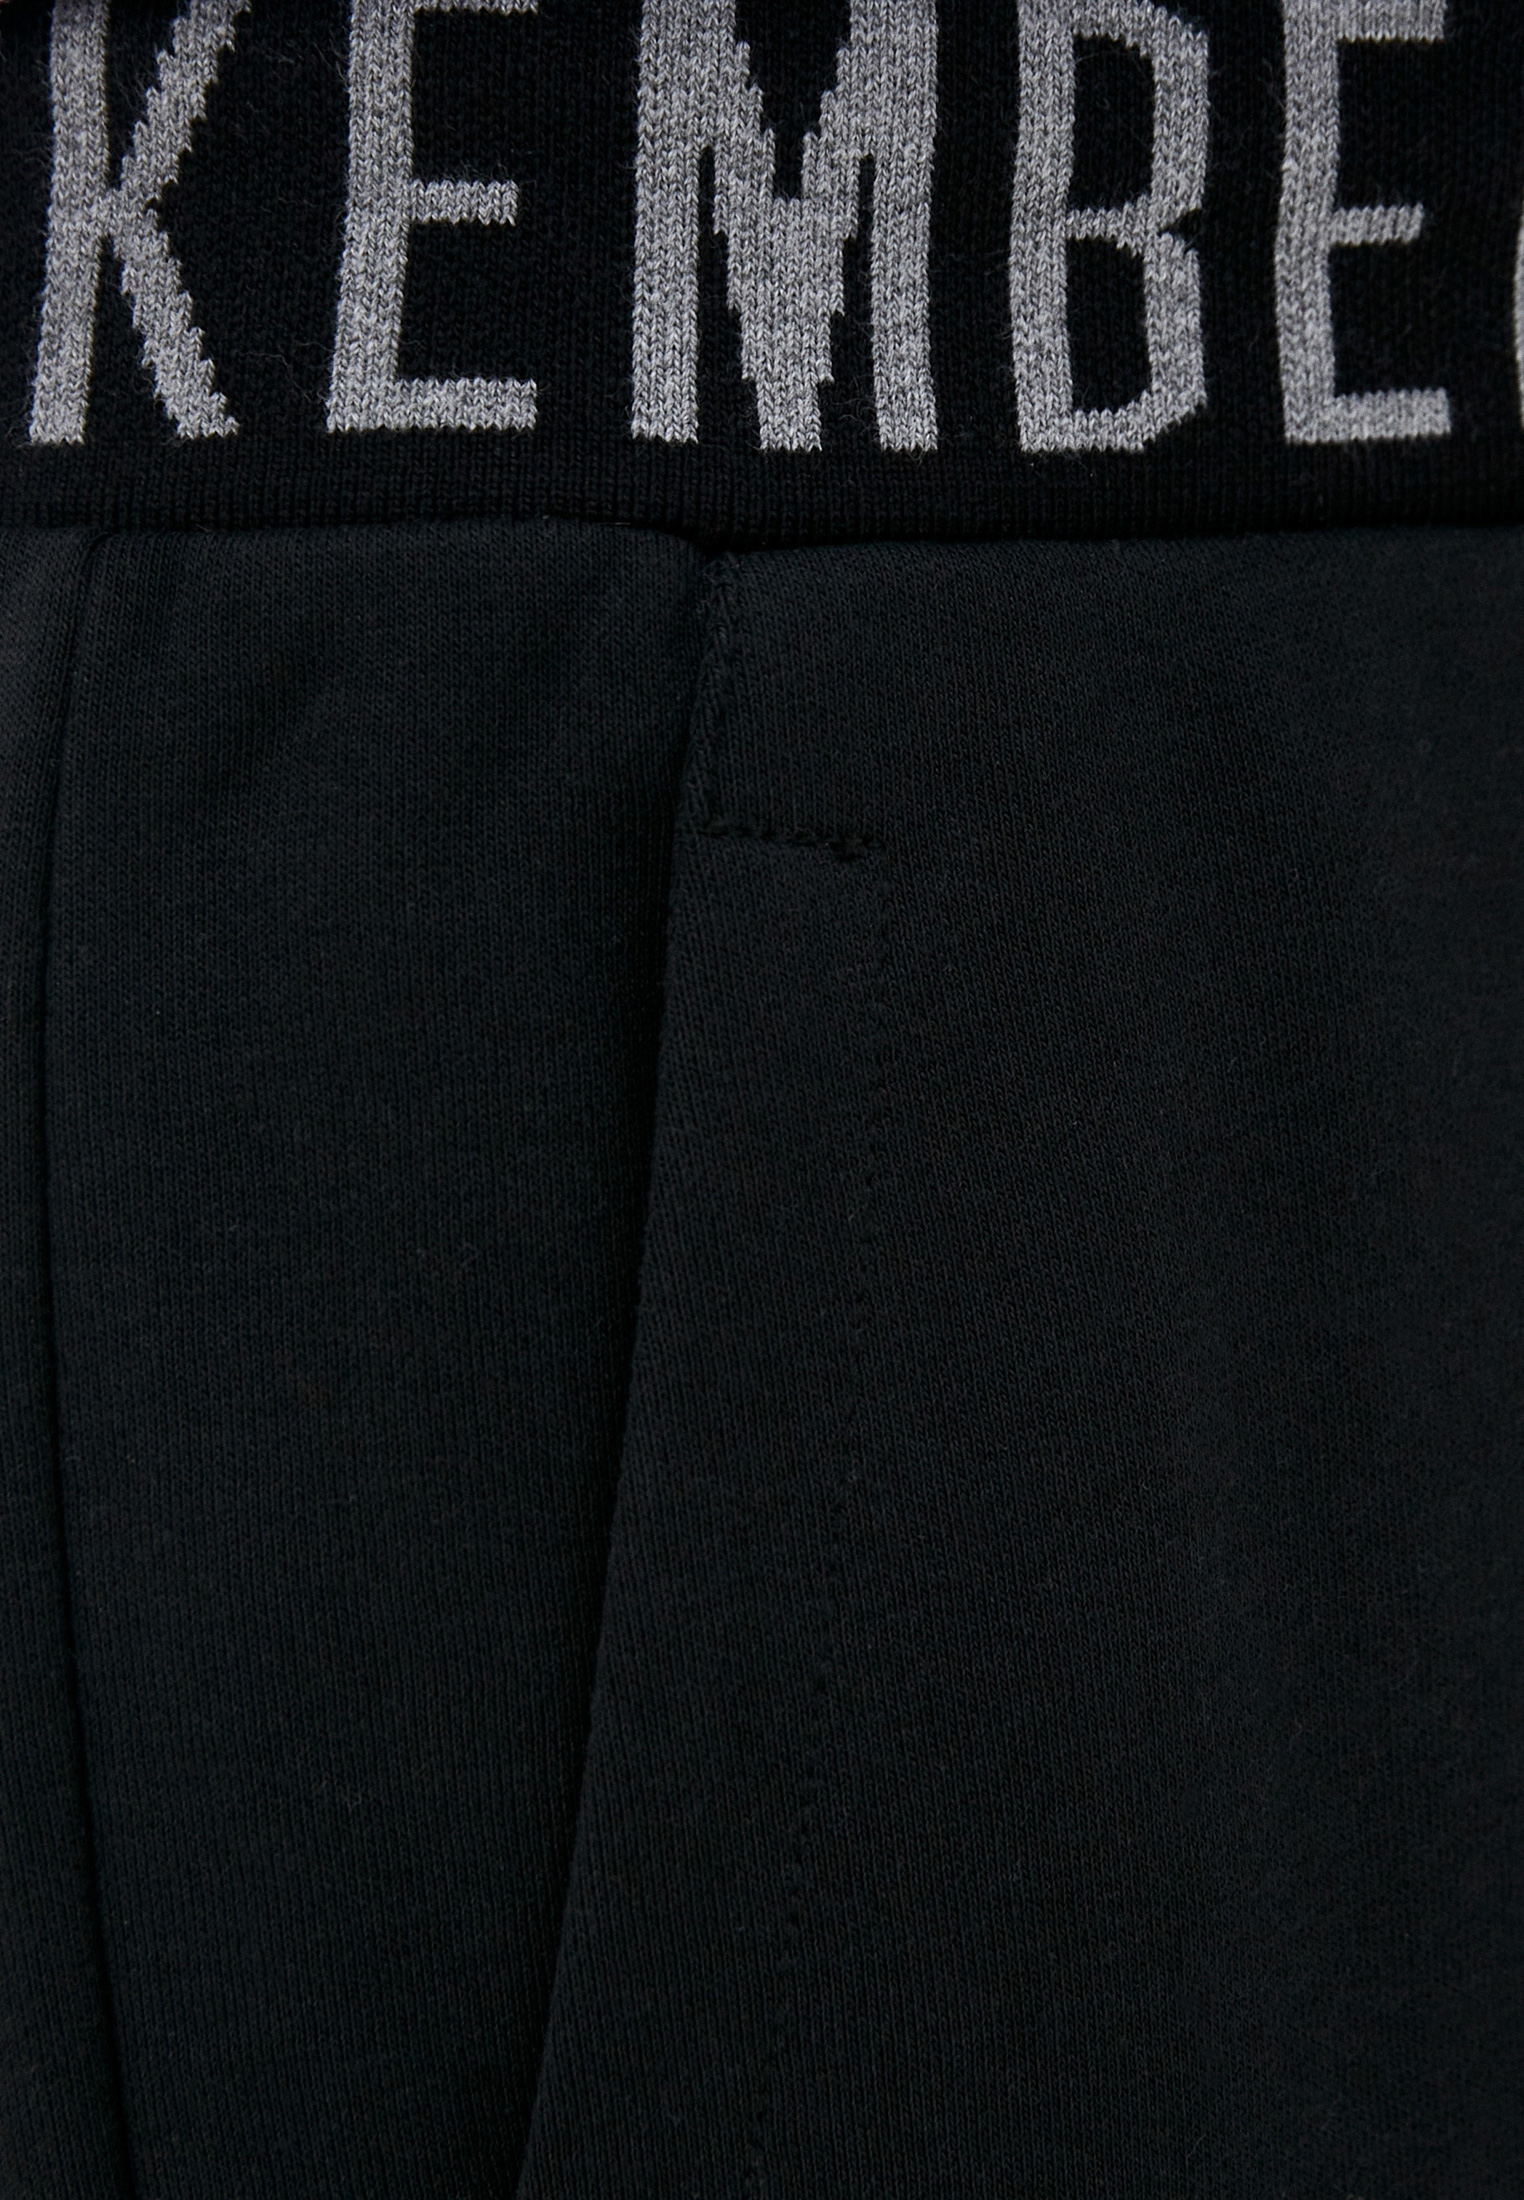 Мужские спортивные брюки Bikkembergs (Биккембергс) C 1 168 00 M 4226: изображение 5